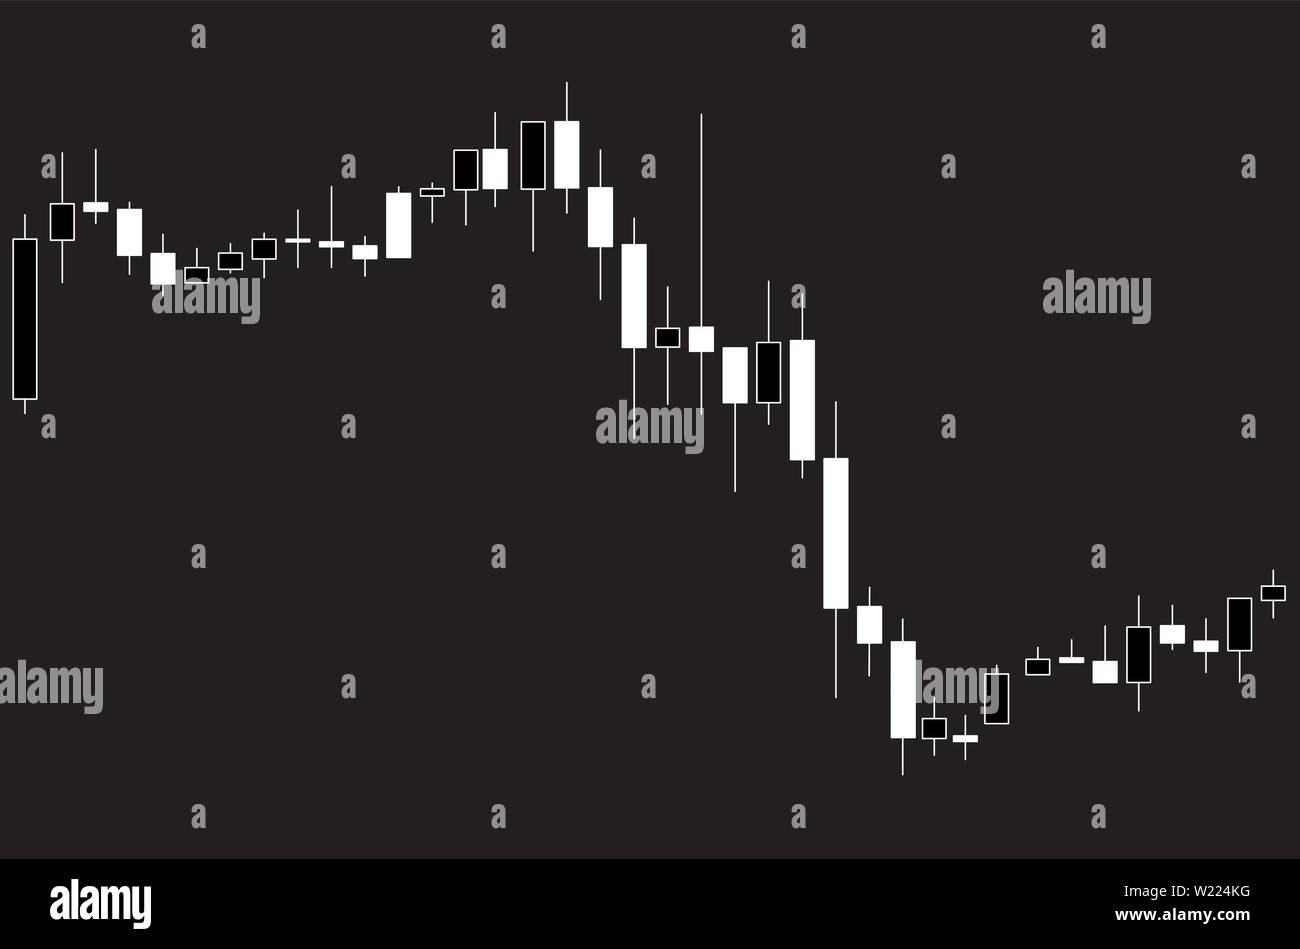 Chandelier japonais noir et blanc tableau montrant le marché à la baisse sur fond noir Illustration de Vecteur